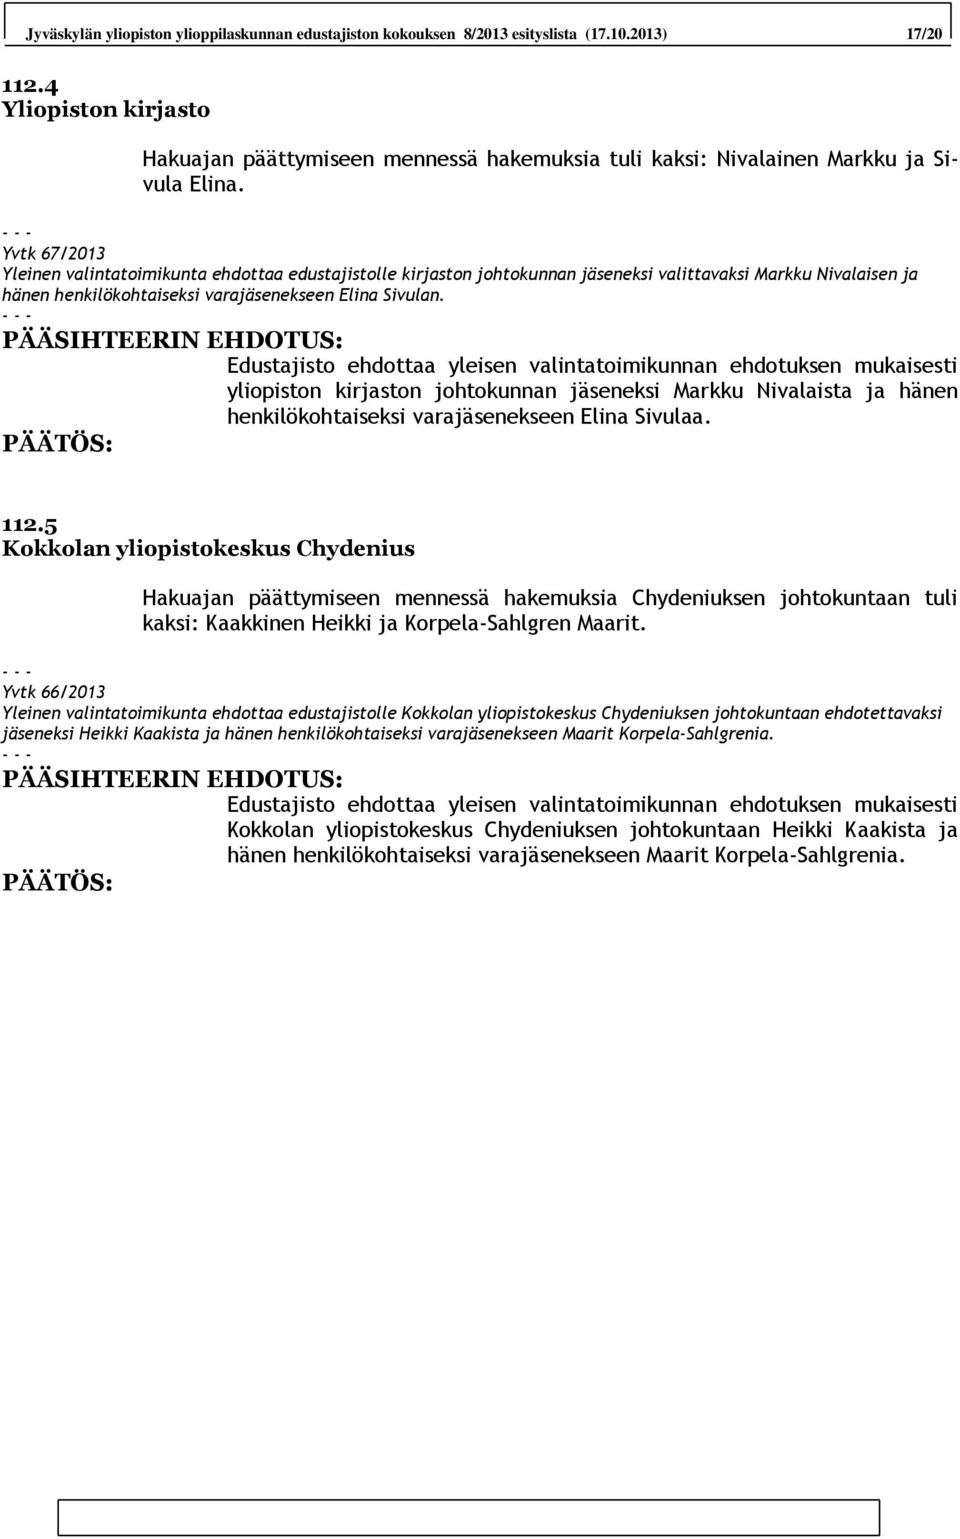 Yvtk 67/2013 Yleinen valintatoimikunta ehdottaa edustajistolle kirjaston johtokunnan jäseneksi valittavaksi Markku Nivalaisen ja hänen henkilökohtaiseksi varajäsenekseen Elina Sivulan.